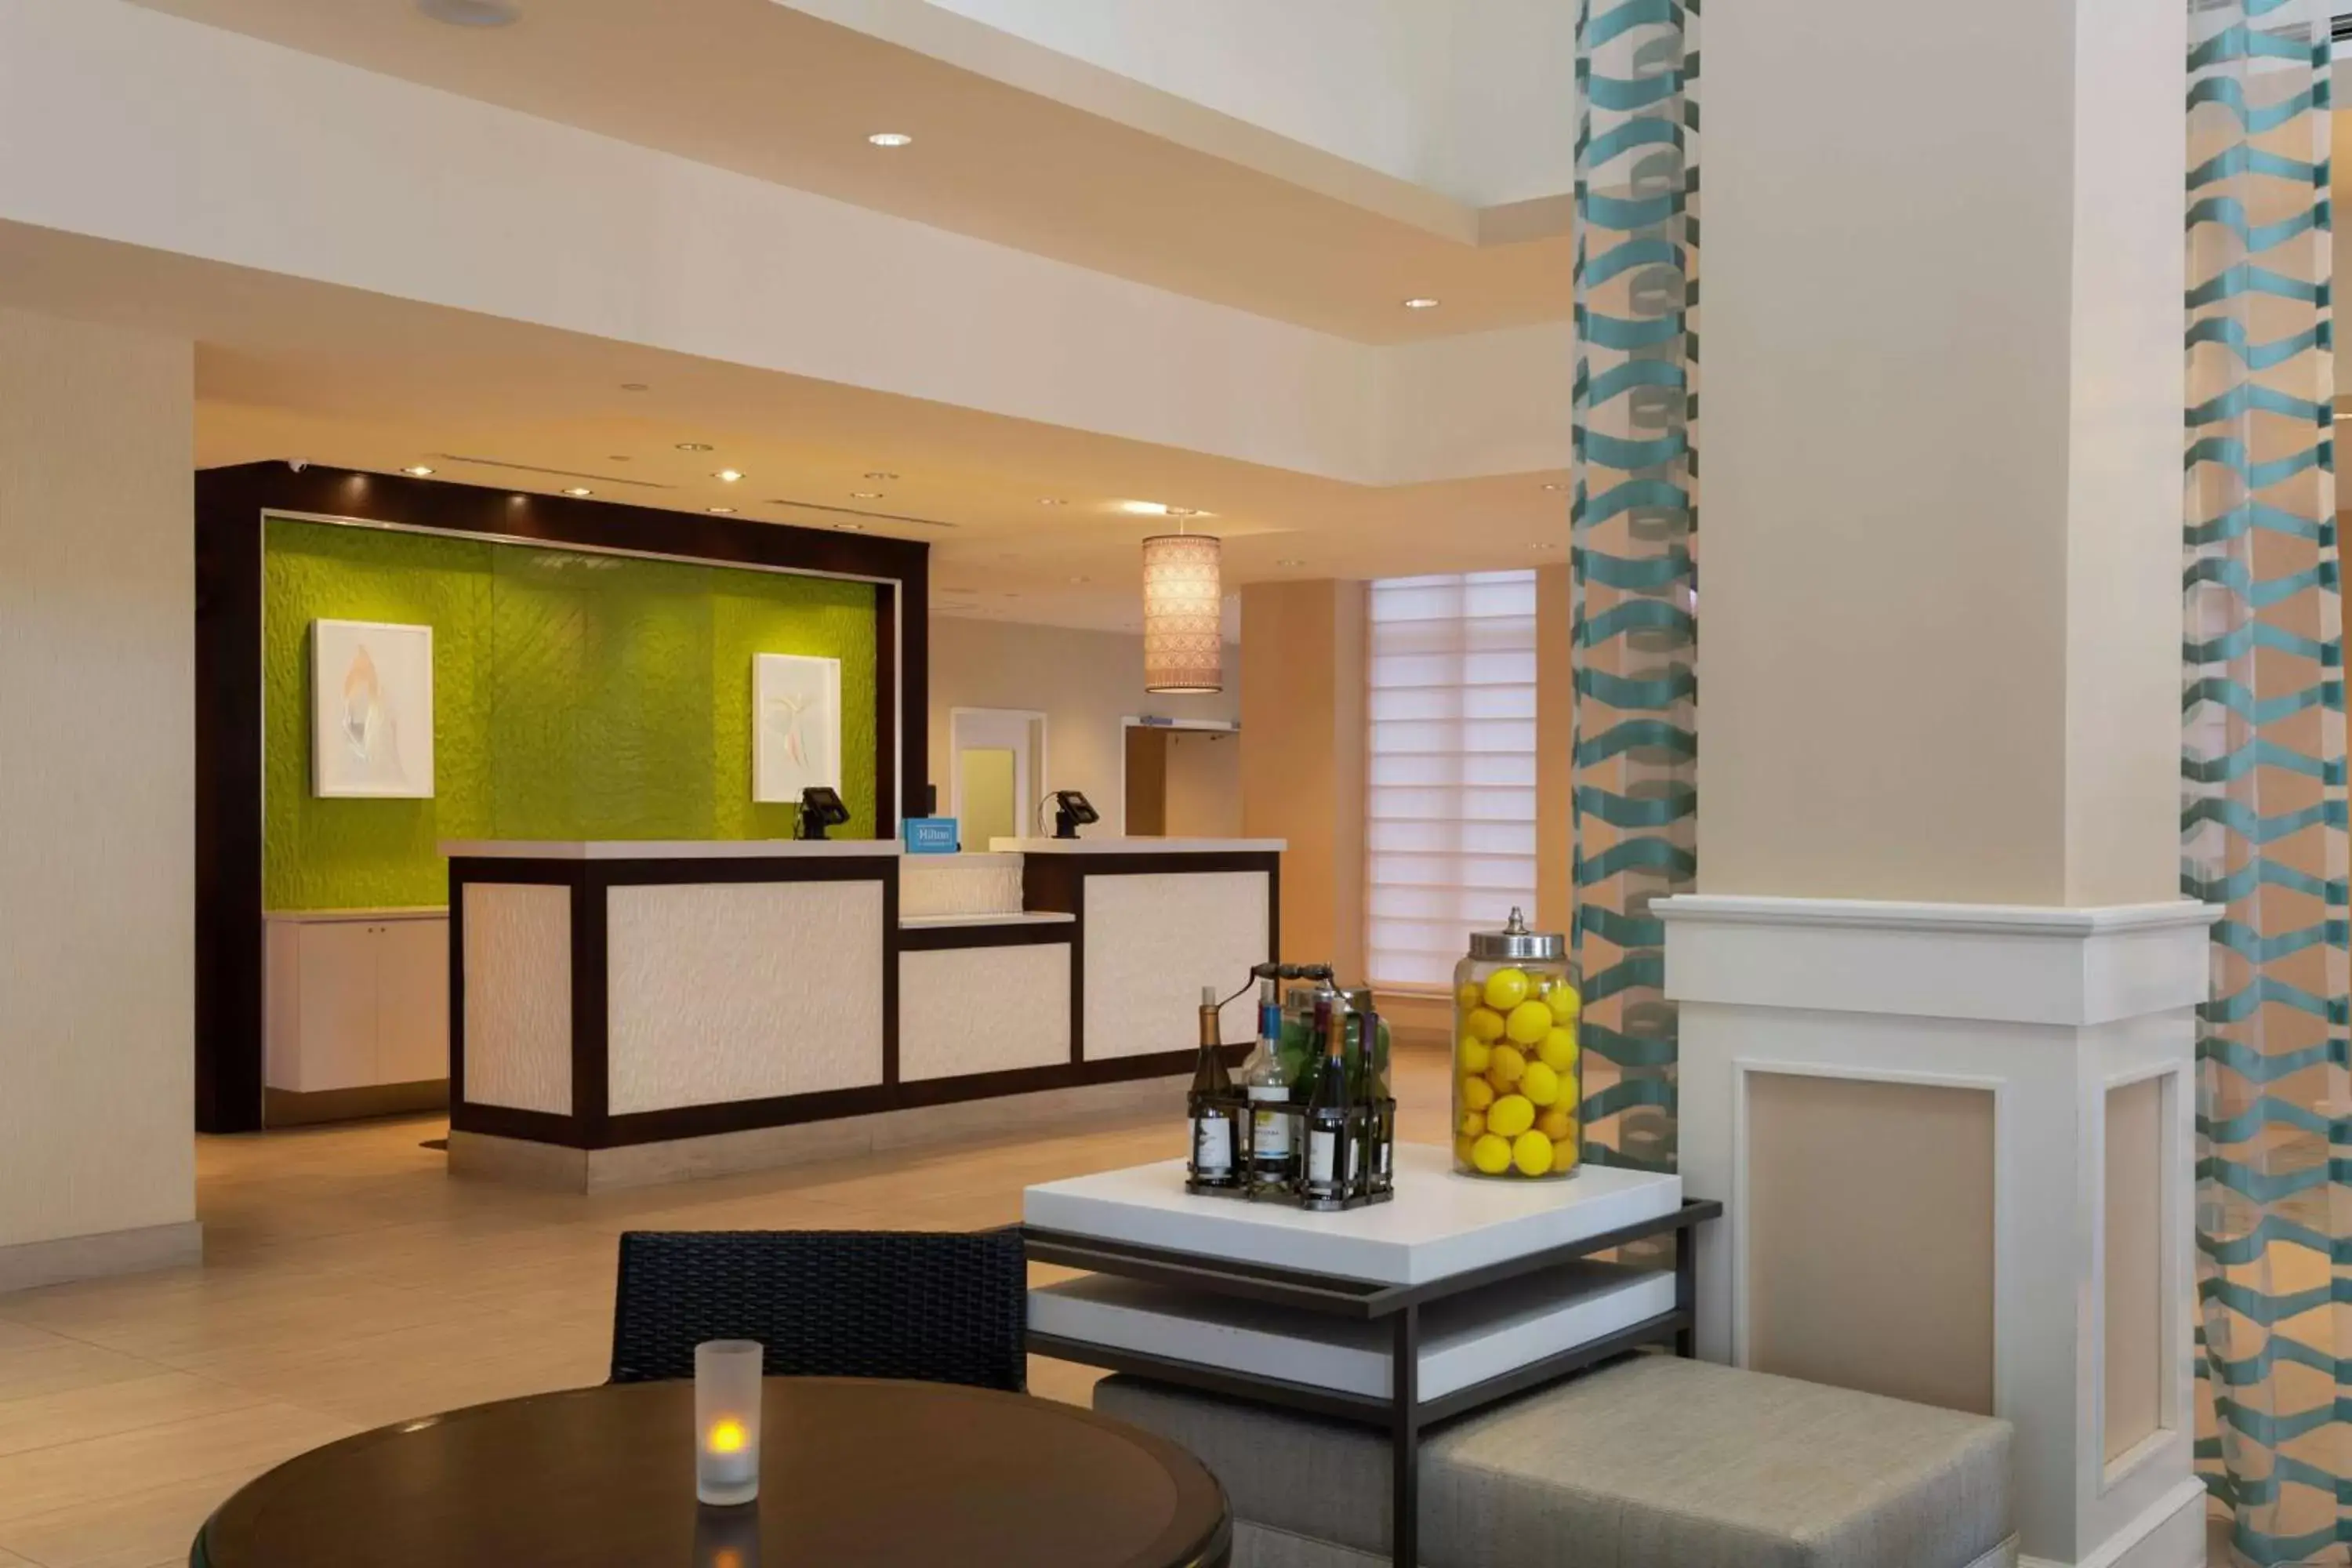 Lobby or reception, Lobby/Reception in Hilton Garden Inn Daytona Beach Oceanfront